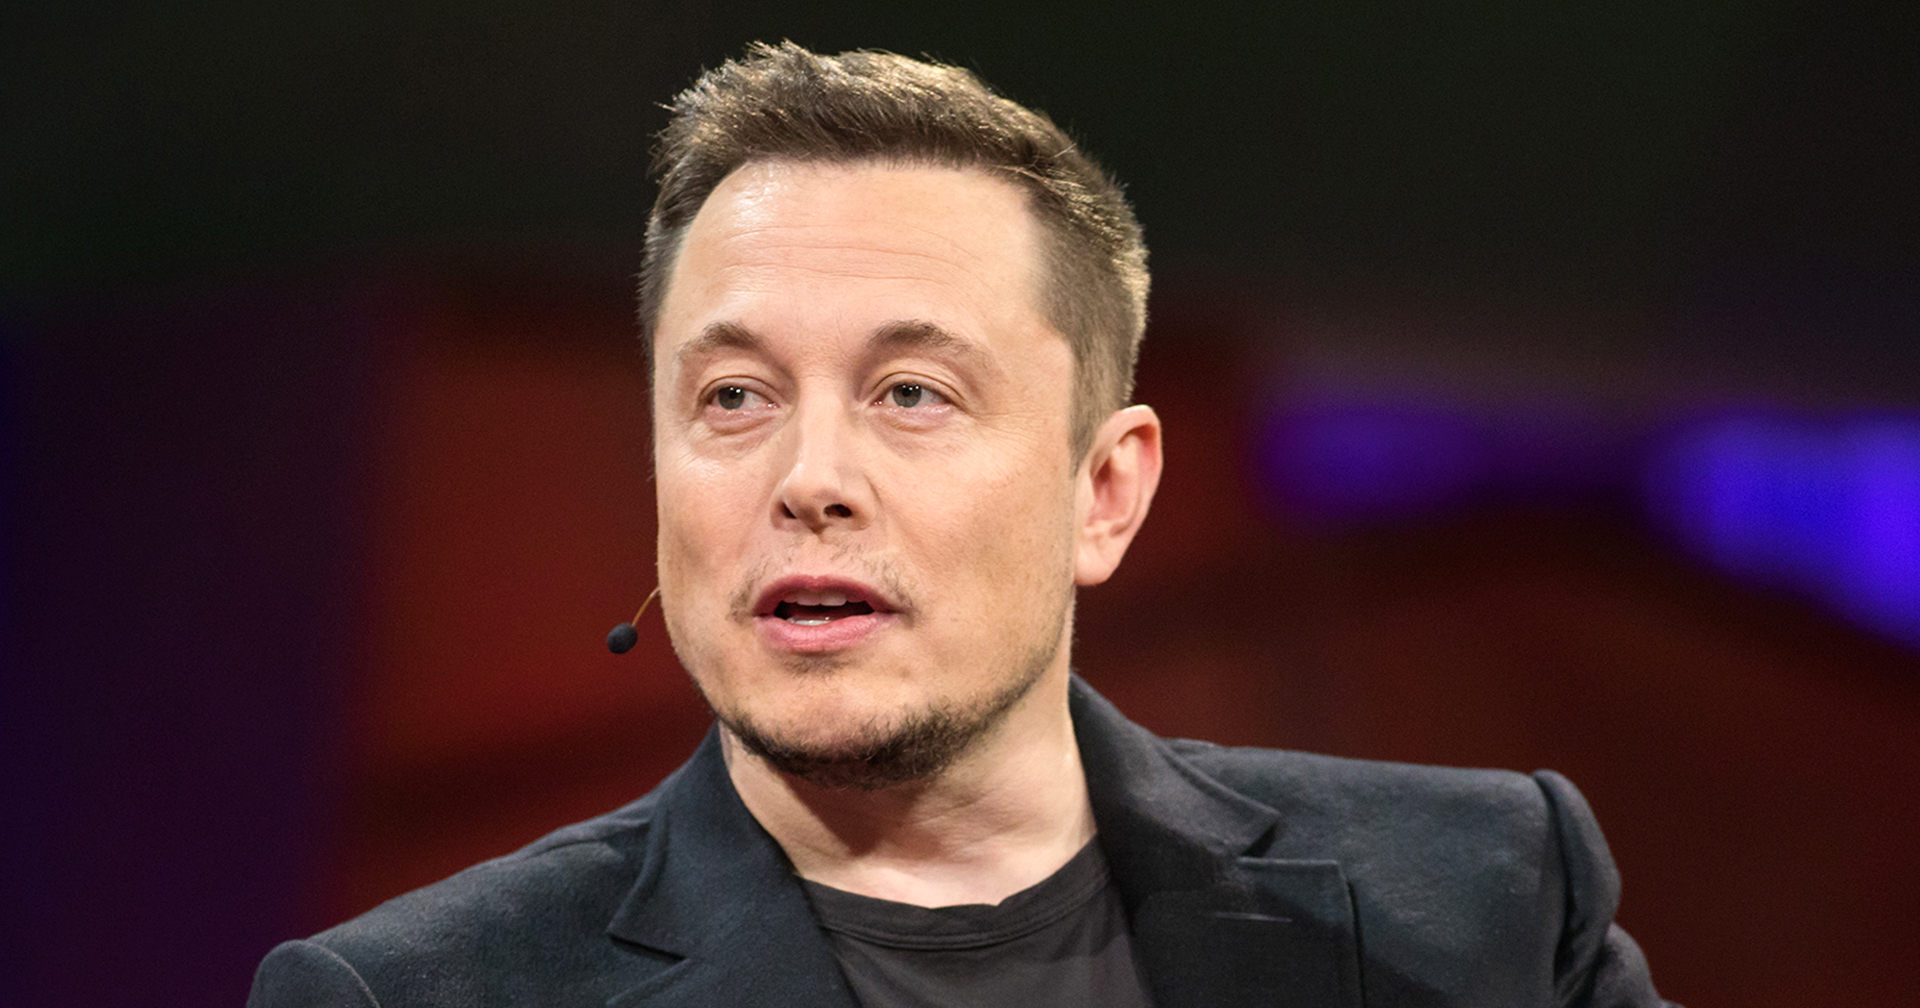 Elon Musk ดึงวิศวกรจาก Tesla มาดูแล Twitter พร้อมให้โหมงาน 7 วันต่อสัปดาห์